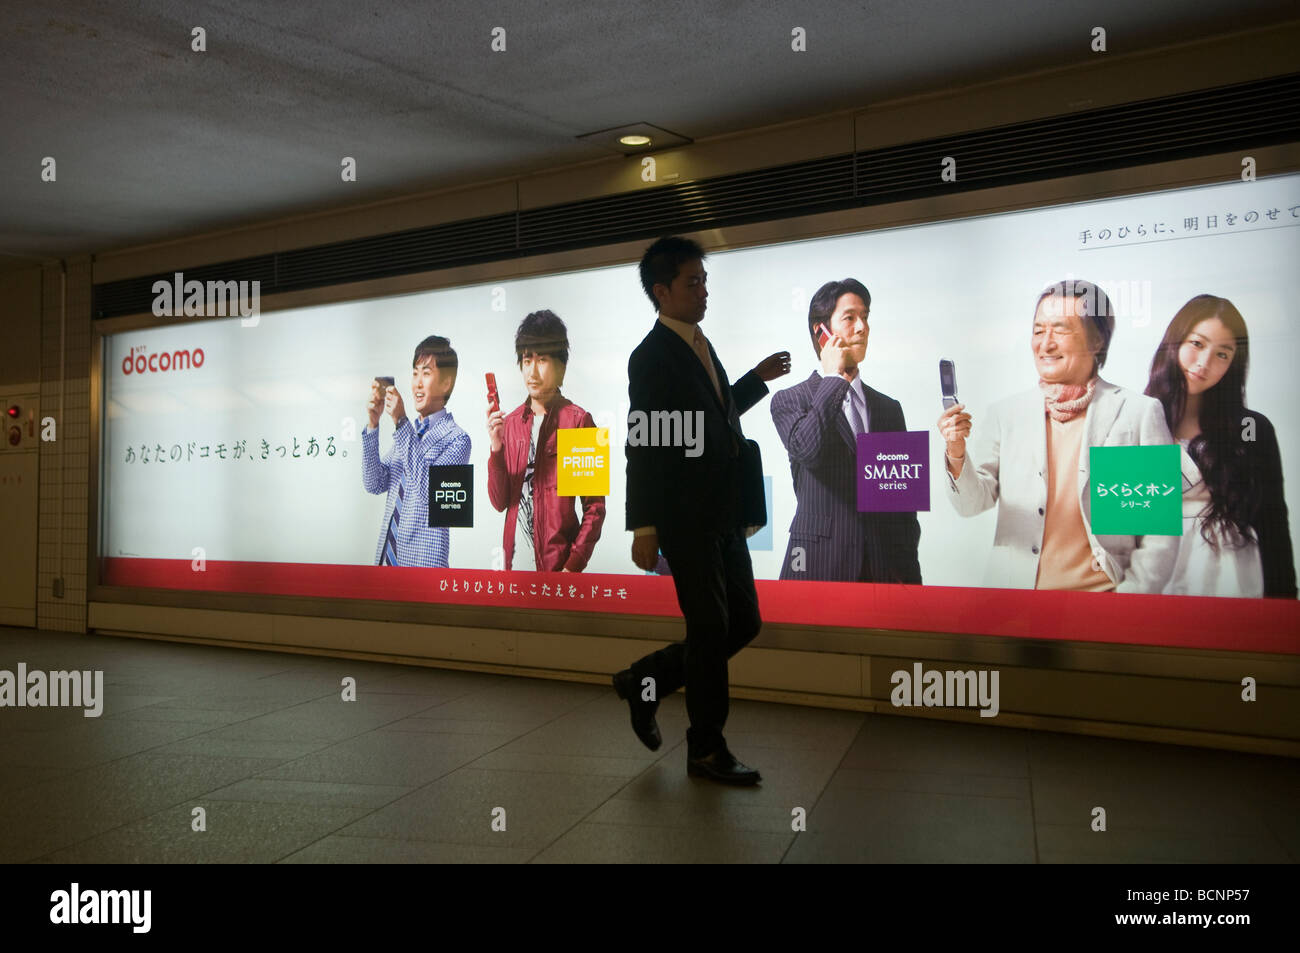 Fußgänger laufen an der Werbetafel vorbei, die DOCOMO, den vorherrschenden Mobilfunkanbieter in Japan, in einer unterirdischen Passage im Zentrum von Tokio, anzeigte Stockfoto